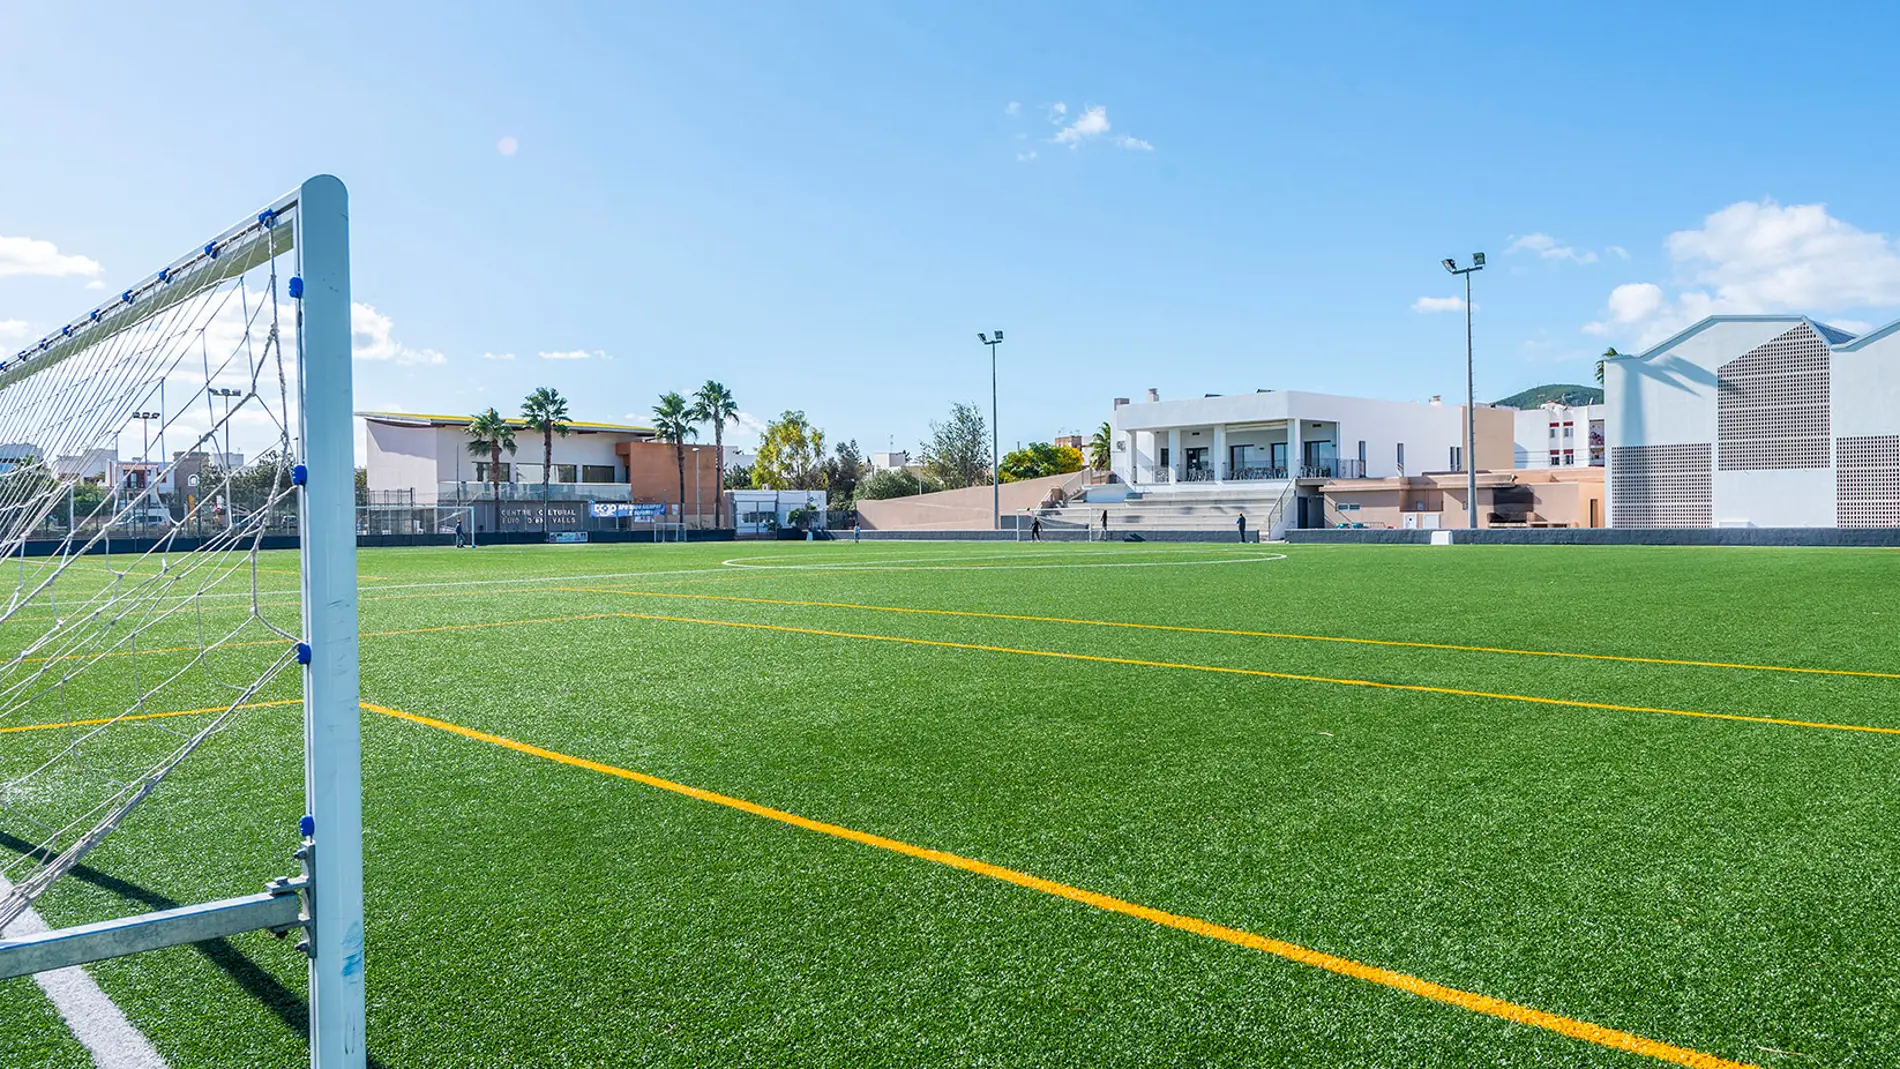 Un árbitro de 16 años suspende un partido de fútbol en Ibiza tras ser insultado gravemente y tras una trifulca entre aficionados de los dos equipos